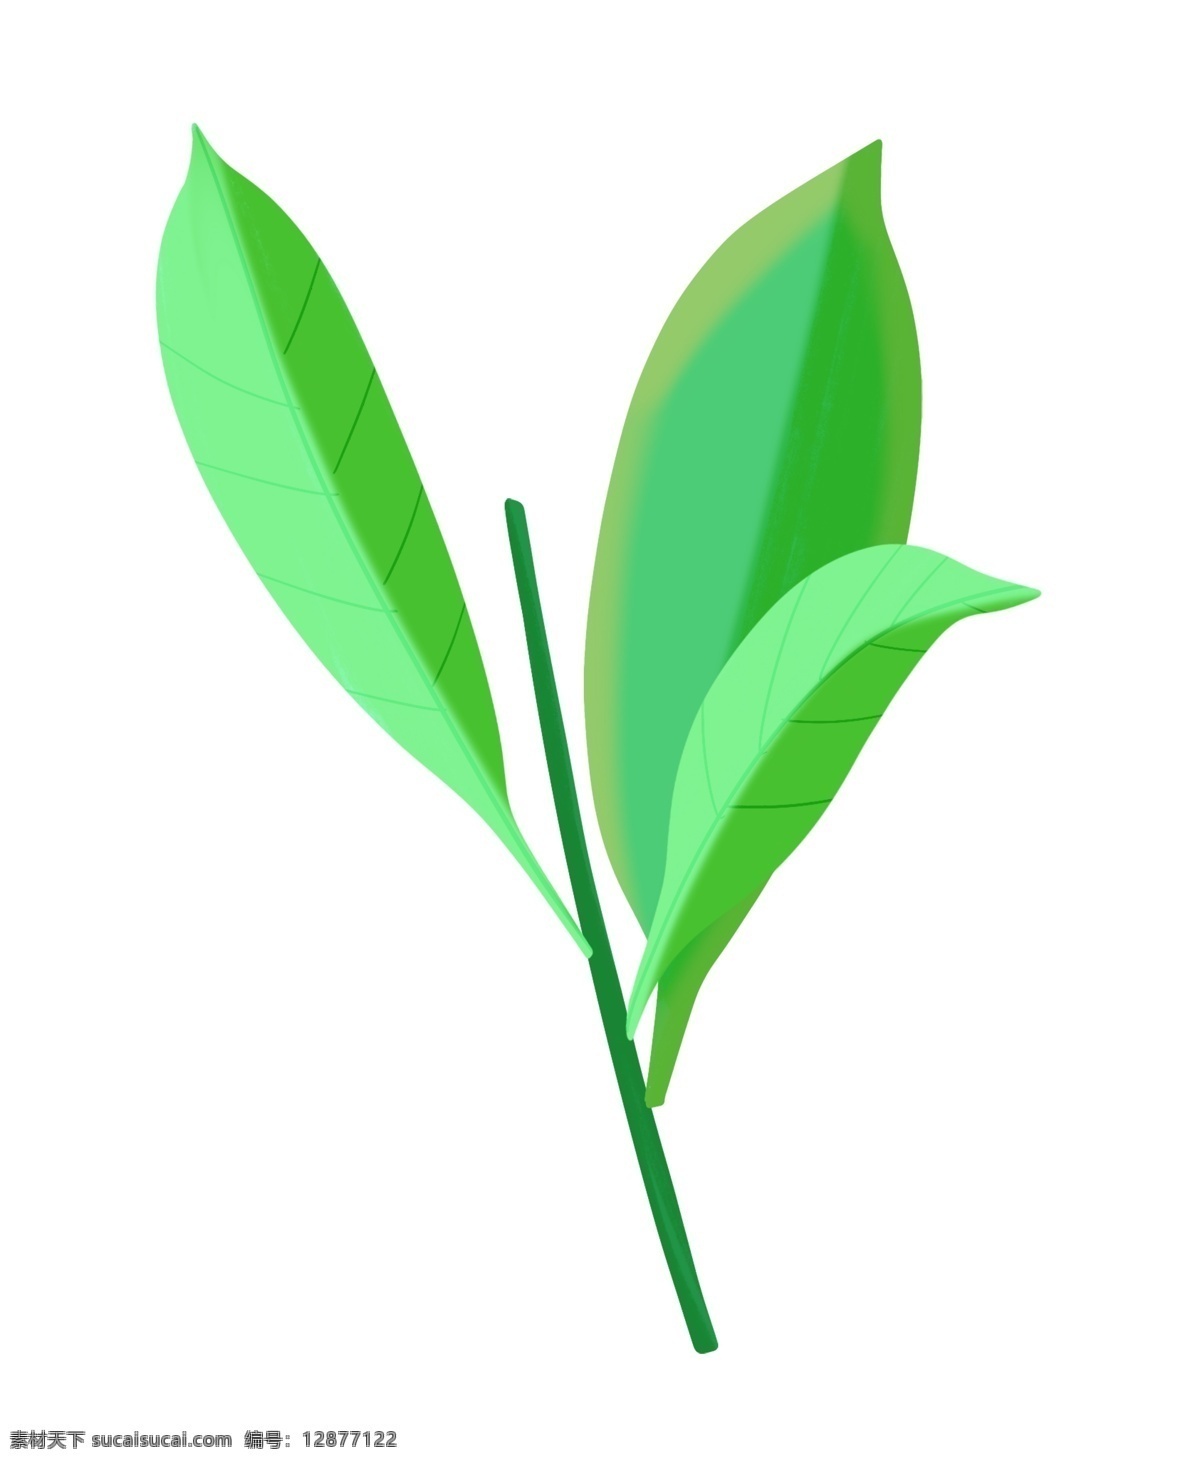 精美 绿色 树叶 插画 绿叶 卡通植物插画 绿色的叶子 精美的树叶 绿色的树叶 叶子 创意植物插画